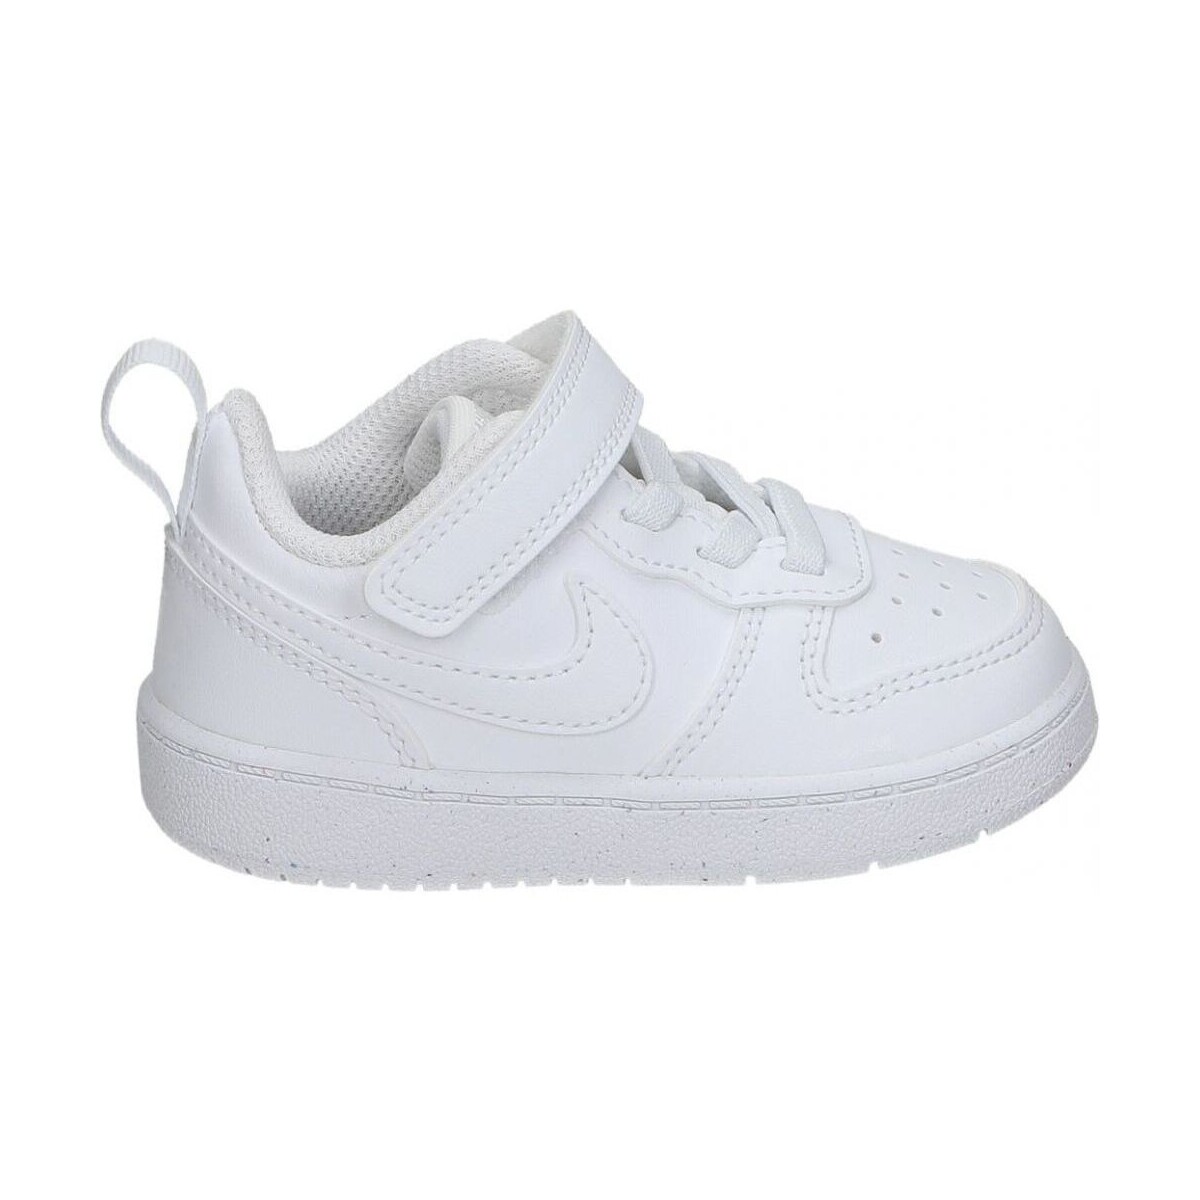 Sapatos Criança Sapatilhas Nike DV5458-106 Branco